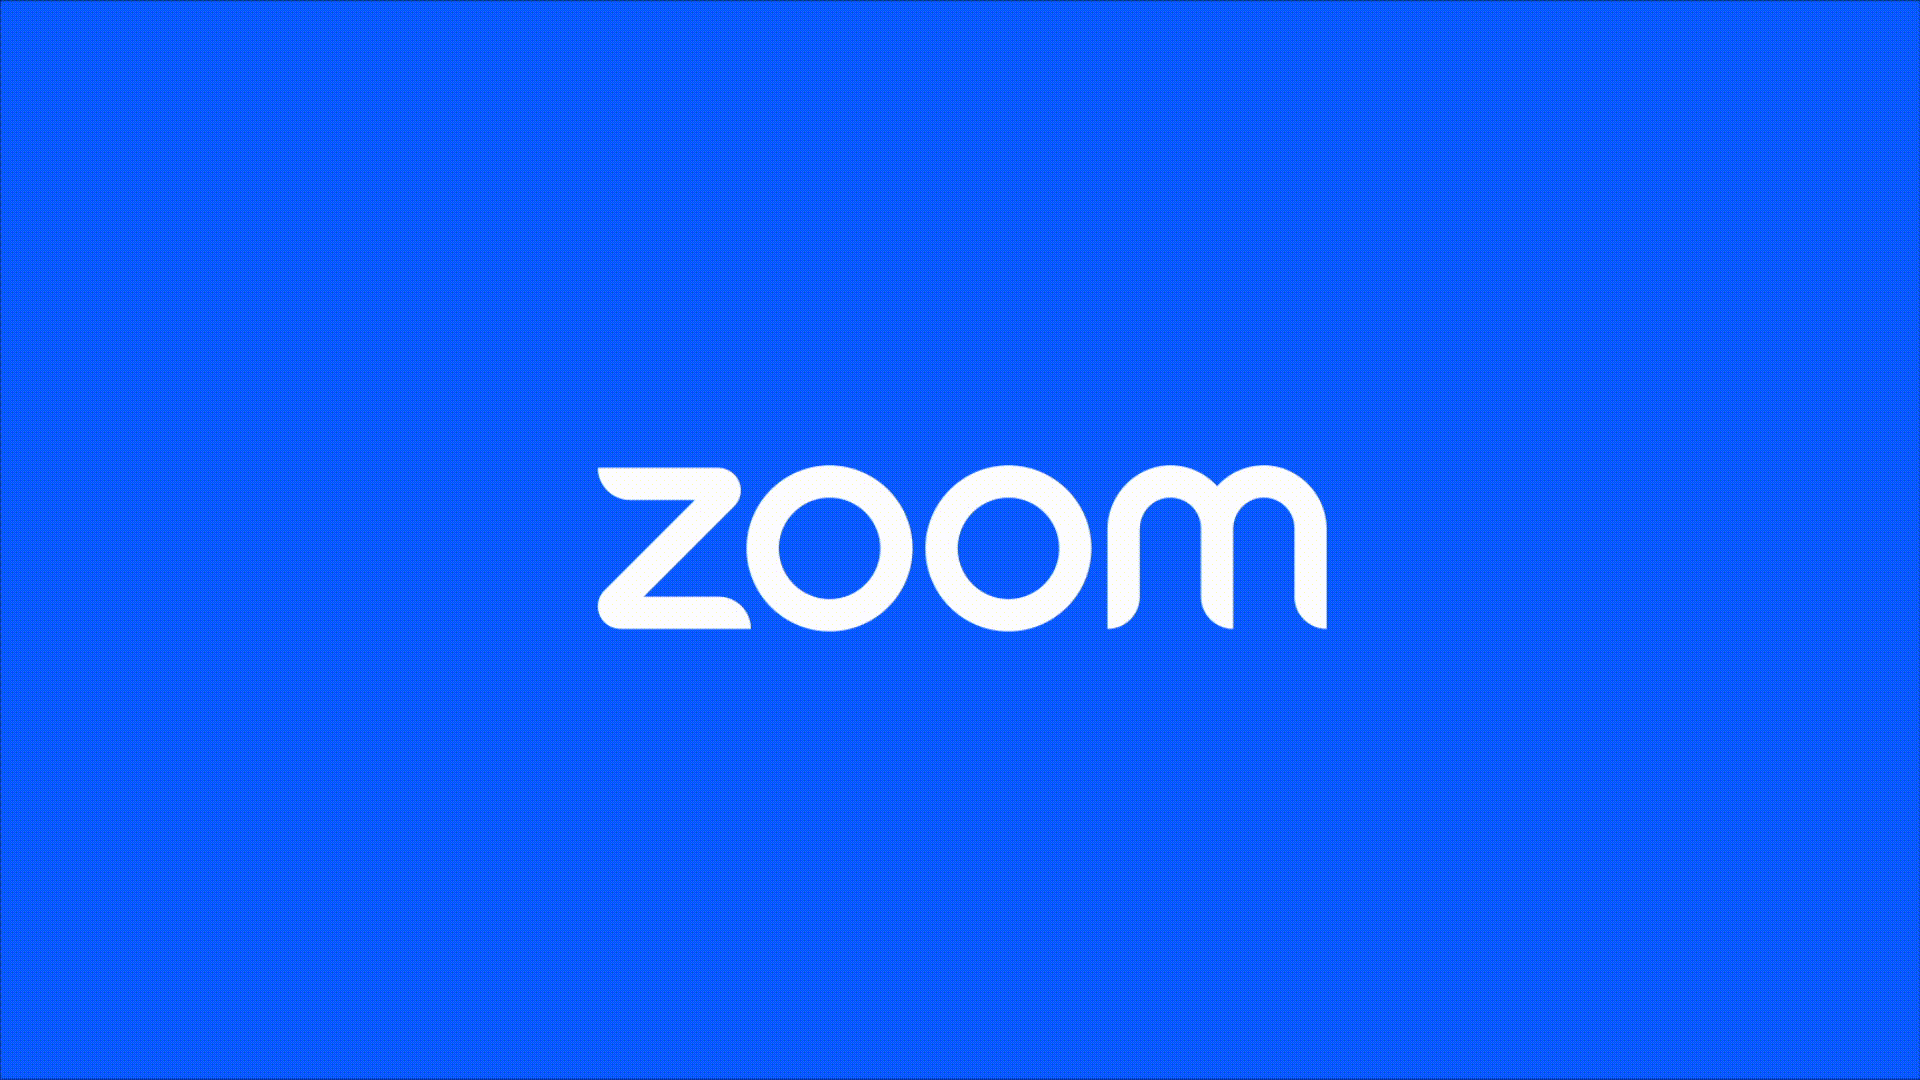 Zoom 更新品牌LOGO，將從視訊應用向大通訊平台轉型 標誌情報局